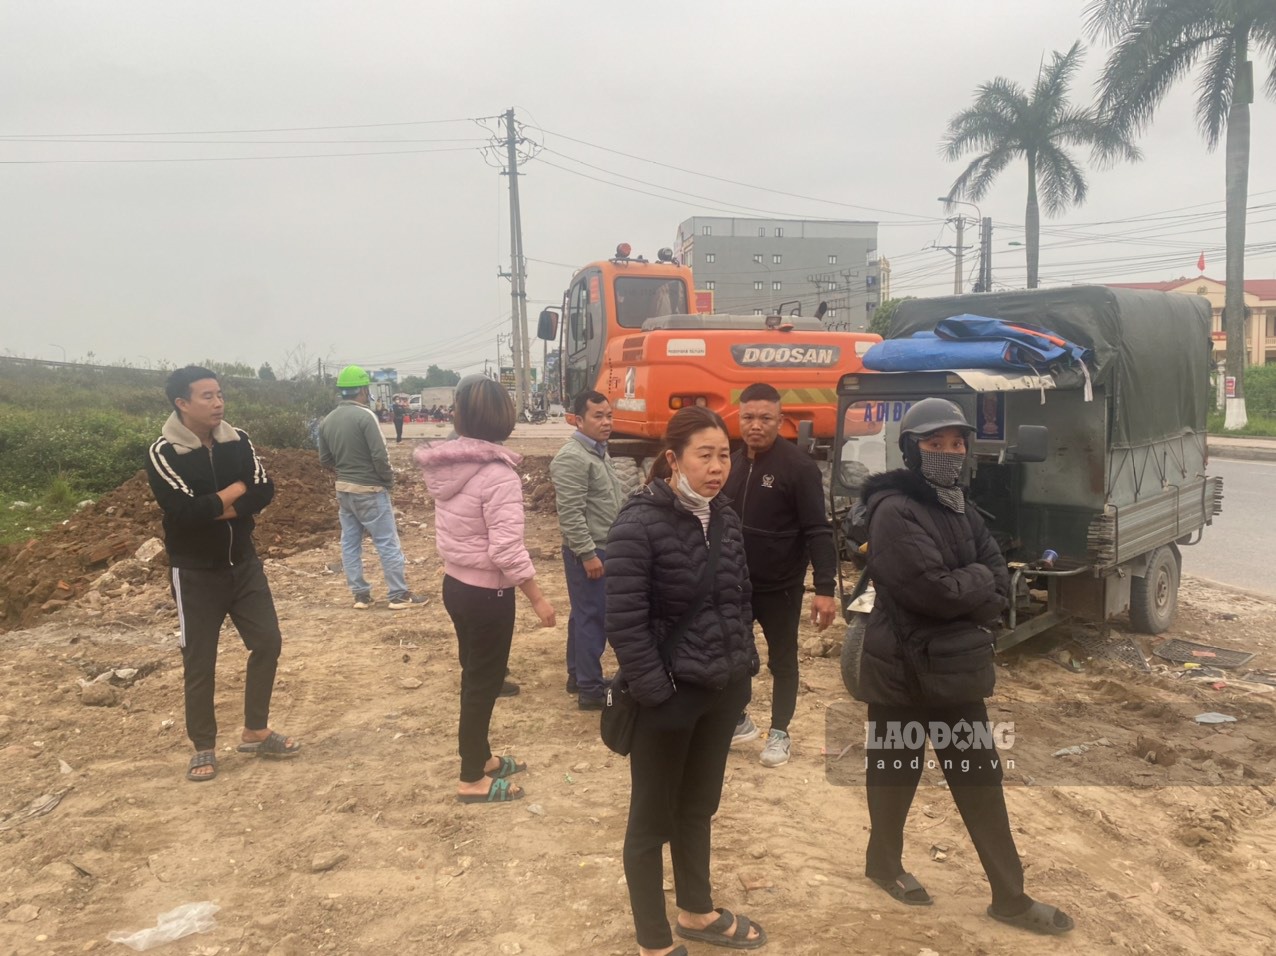 Kiot, lều lán bán hàng trên đường gom cao tốc Hà Nội-Bắc Giang đã được dỡ bỏ và hoàn trả mặt bằng, hành lang an toàn giao thông. Ảnh: Nguyễn Kế